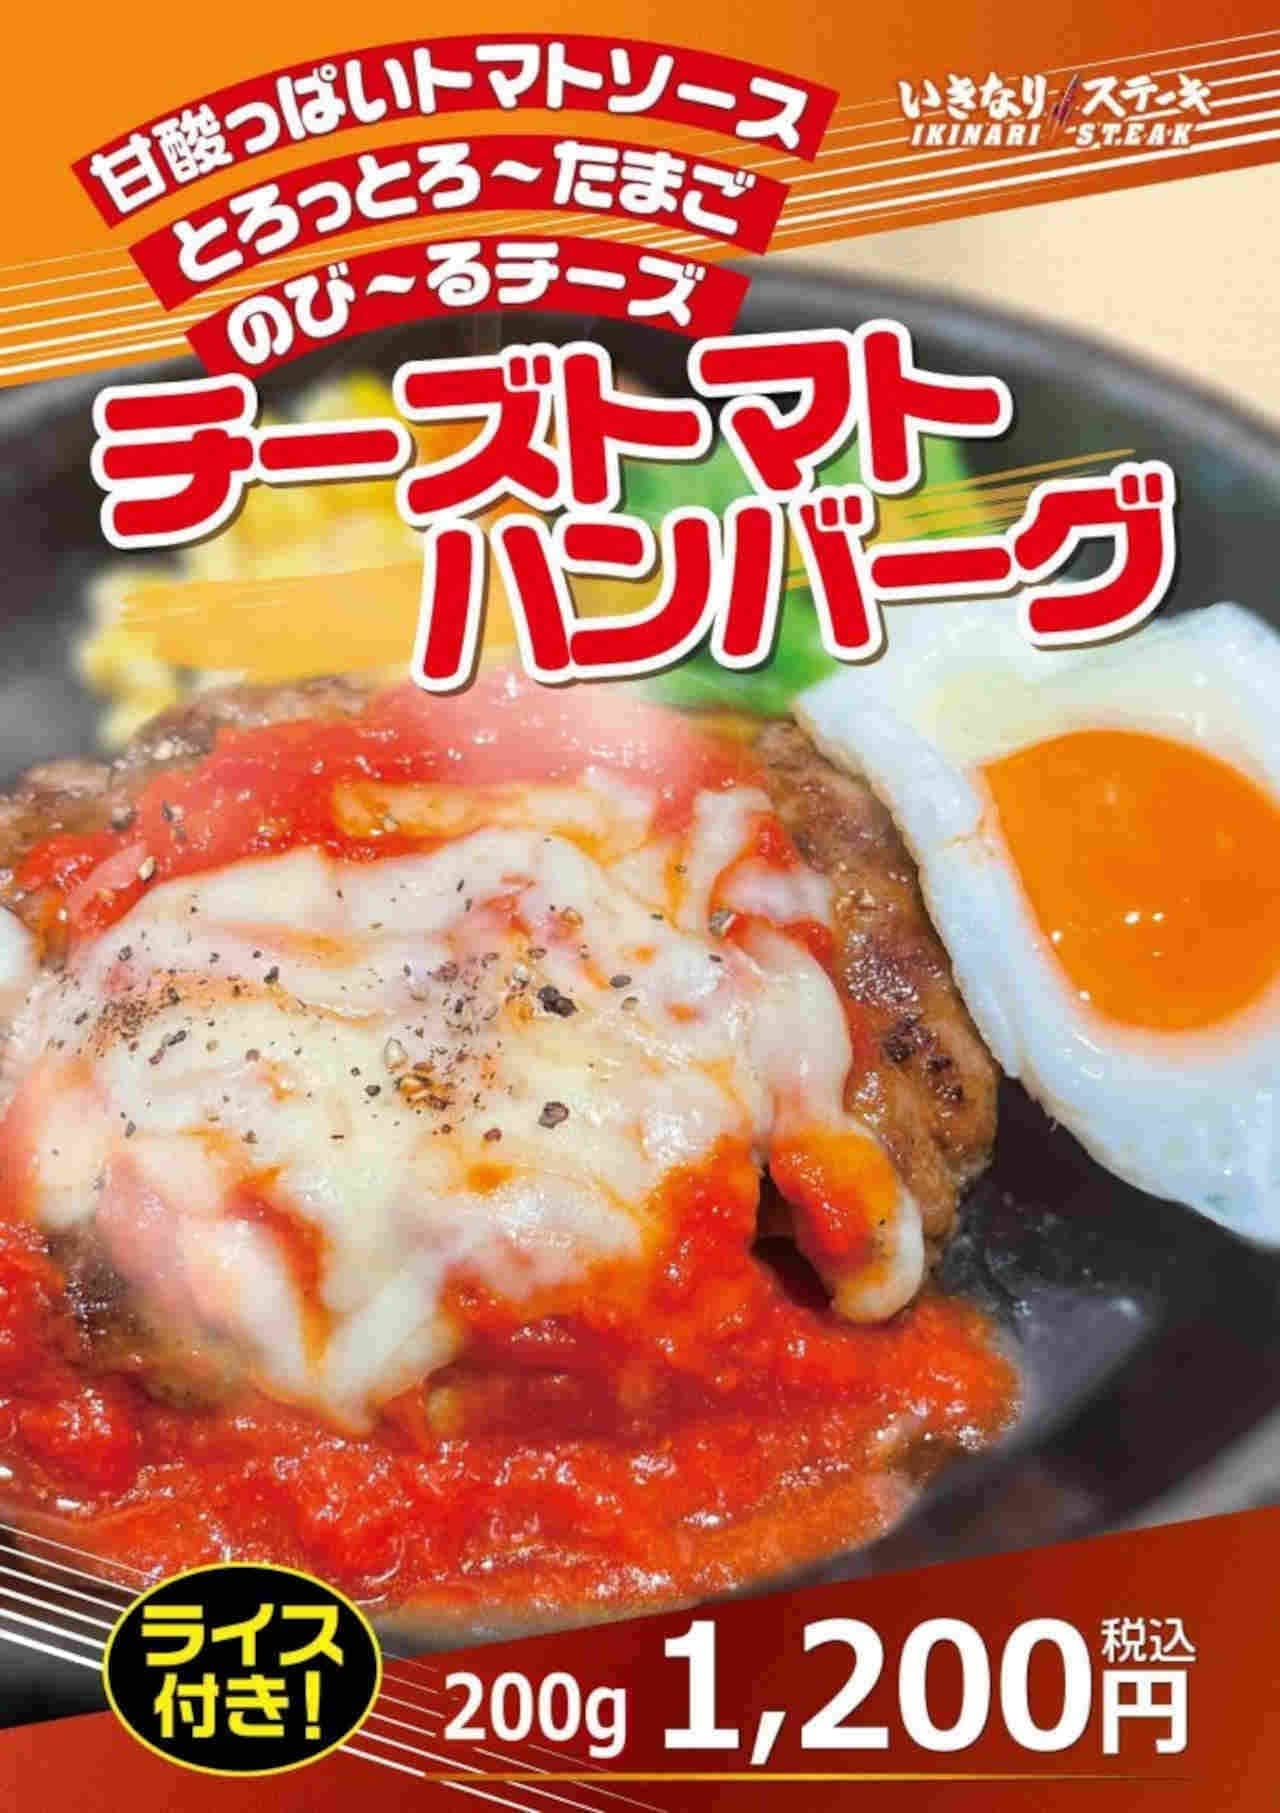 Ikinari!STEAK "fried egg cheese tomato hamburger"